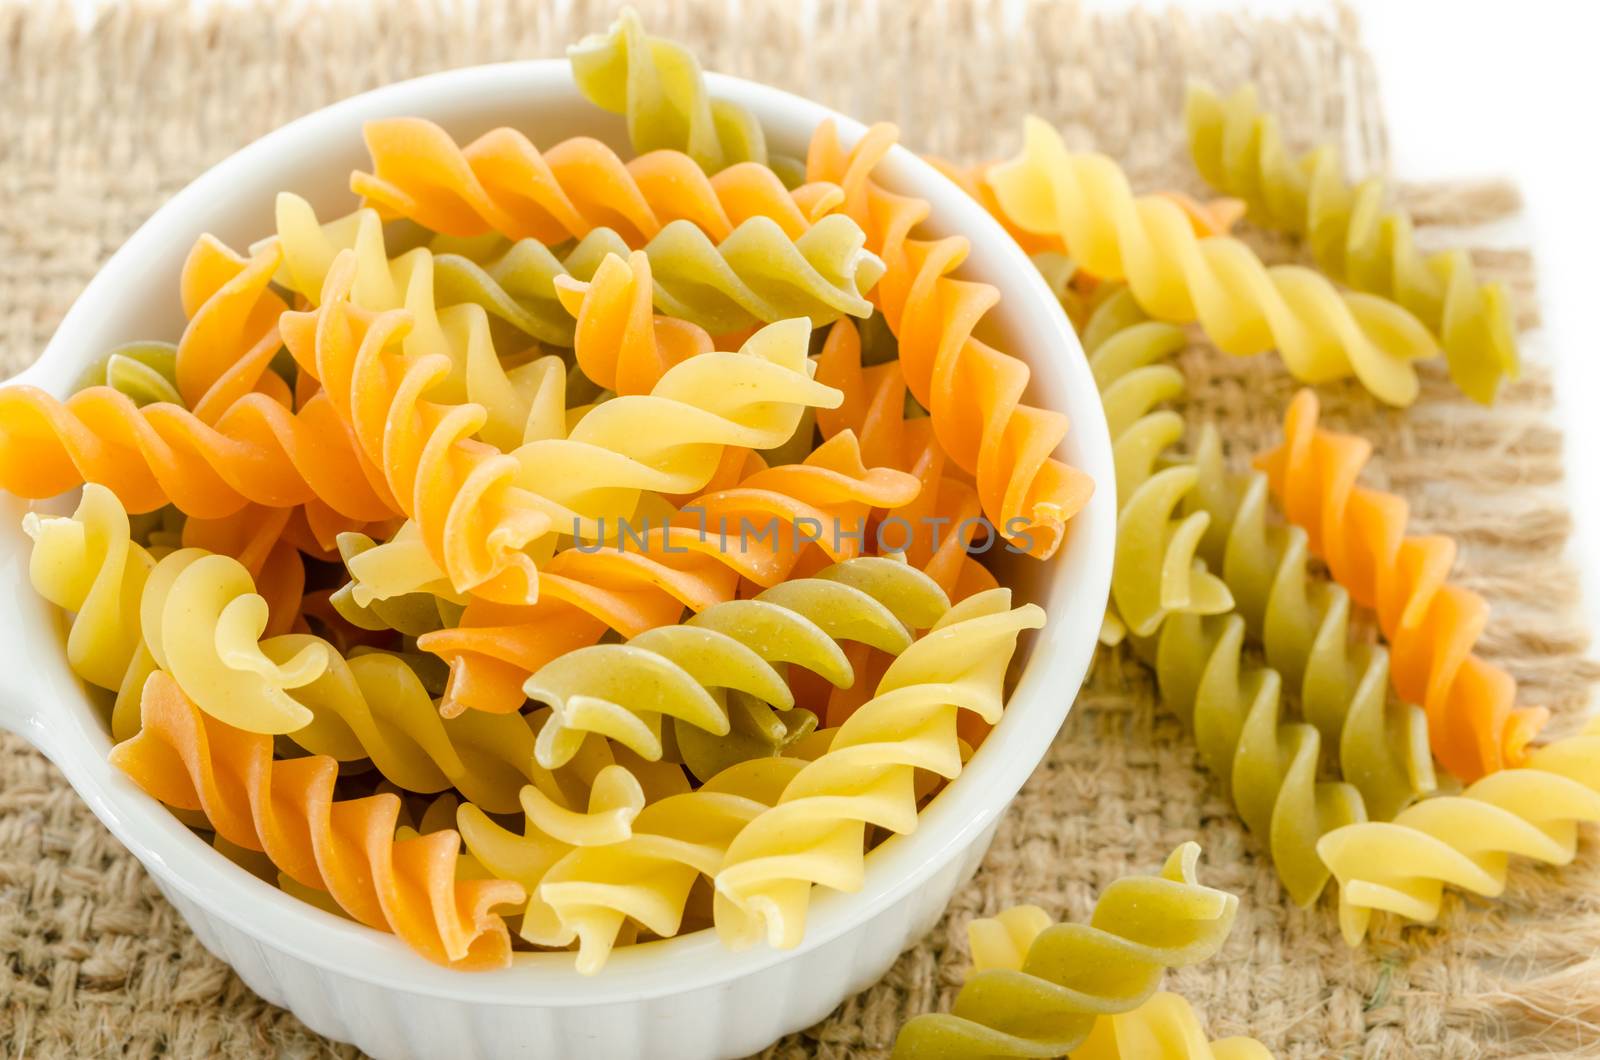 dried italian pasta (macaroni) in white bowl on sack background.